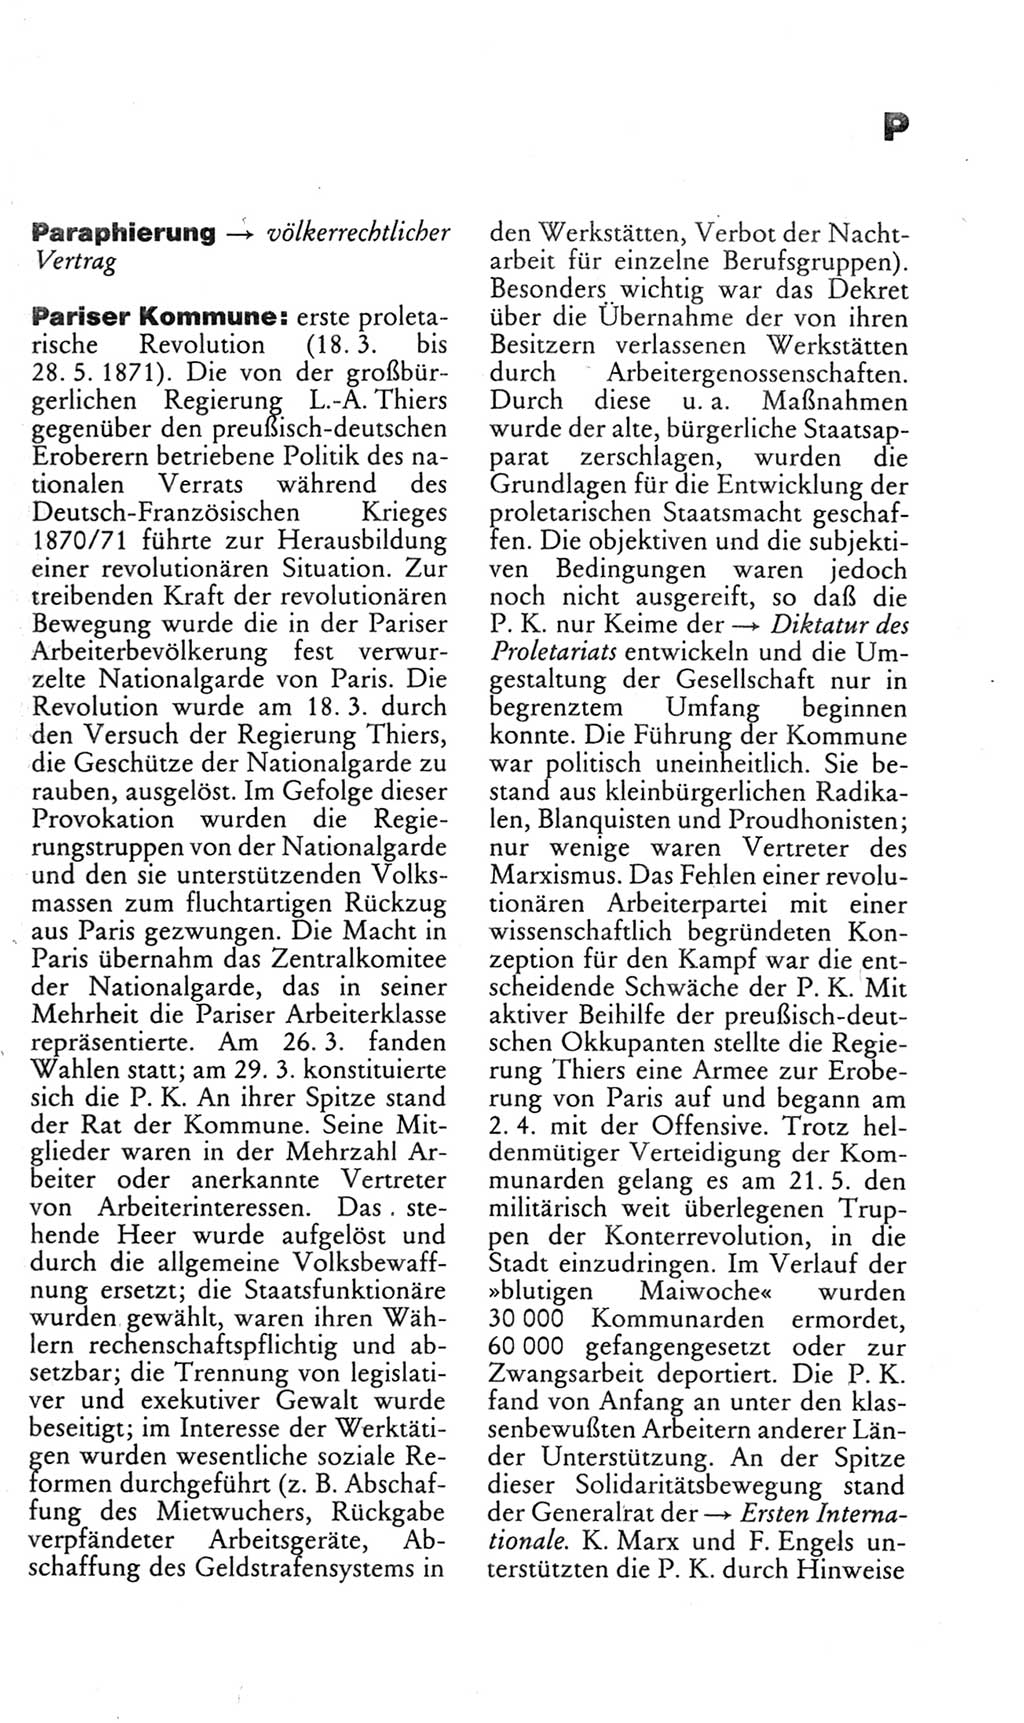 Kleines politisches Wörterbuch [Deutsche Demokratische Republik (DDR)] 1985, Seite 717 (Kl. pol. Wb. DDR 1985, S. 717)